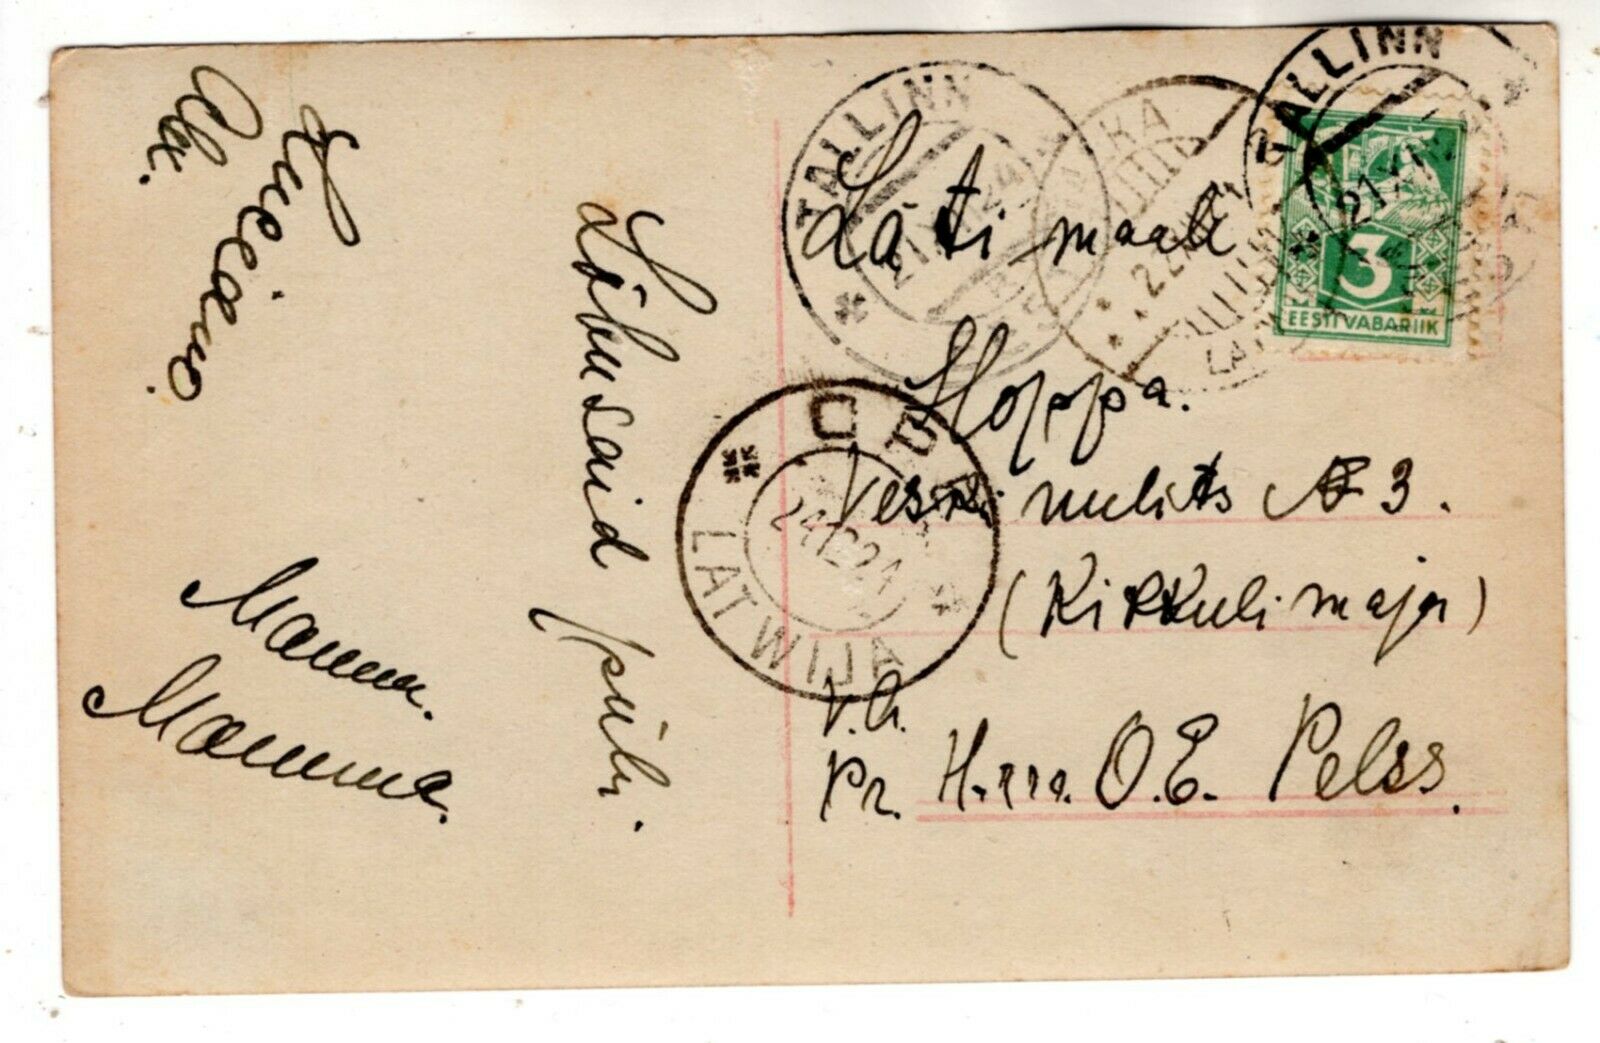 1921 Tallinn Valka  Ope Latwija Latvia Vintage Estonia Estonian Postcard W Stamp